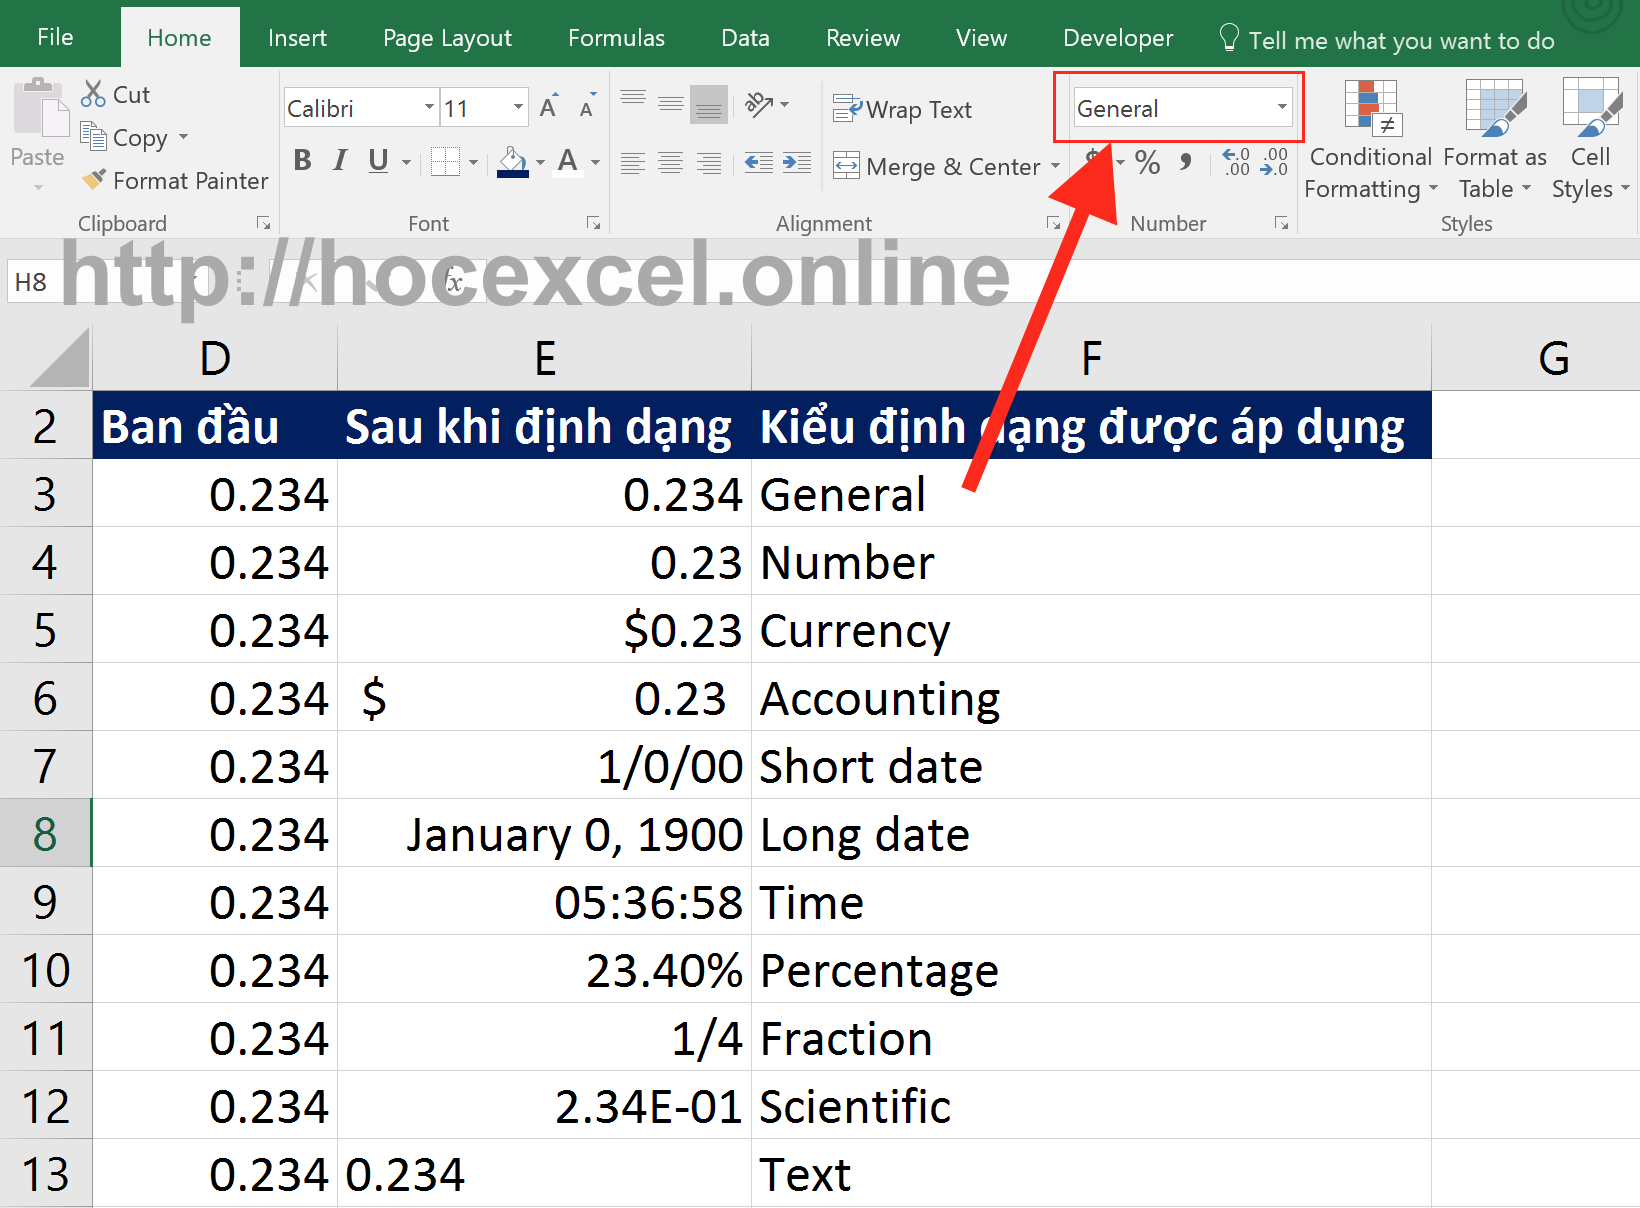 Excel định dạng dữ liệu: Excel 2016 mang đến nhiều tính năng mới, nhằm giúp cho việc định dạng dữ liệu trở nên dễ dàng hơn bao giờ hết. Bây giờ bạn có thể định dạng dữ liệu theo kiểu số, ngày tháng và thậm chí là tự động định dạng dữ liệu. Với Excel 2016, bạn có thể kiểm soát cách dữ liệu của mình được định dạng.